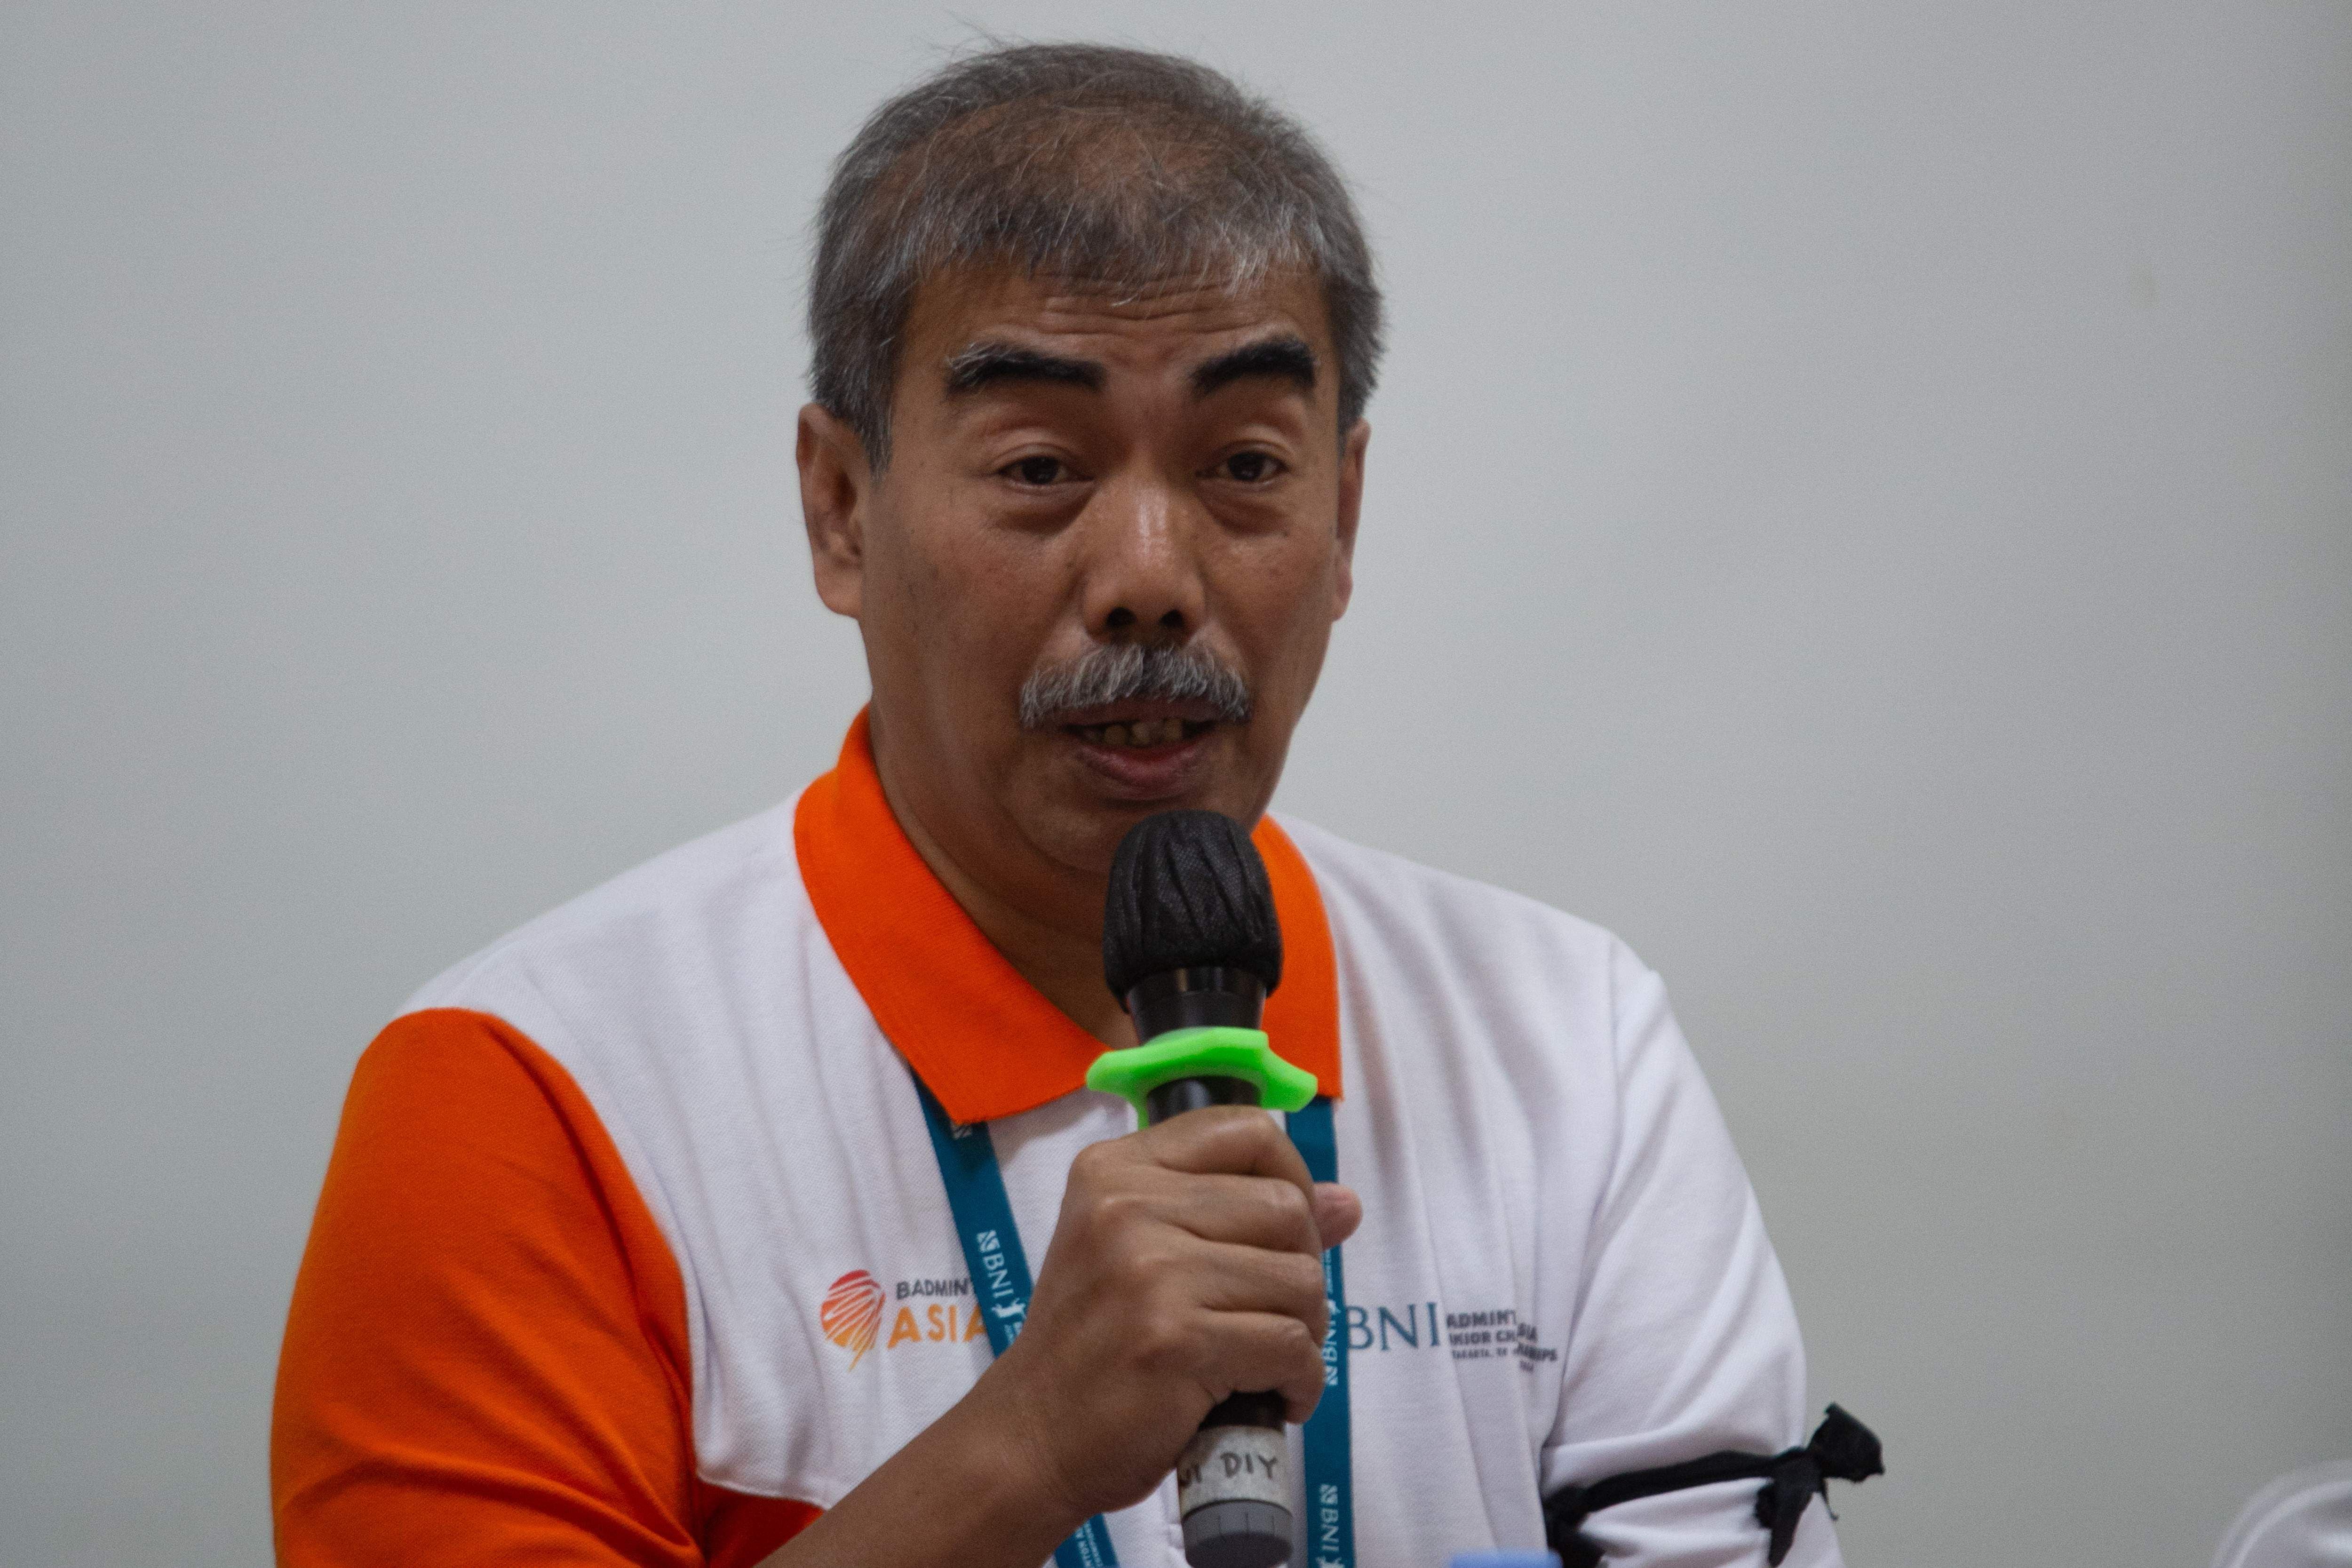 Broto Happy, portavoz de la PBSI, discute las medidas tomadas durante el trágico evento en el torneo internacional de bádminton en Indonesia.